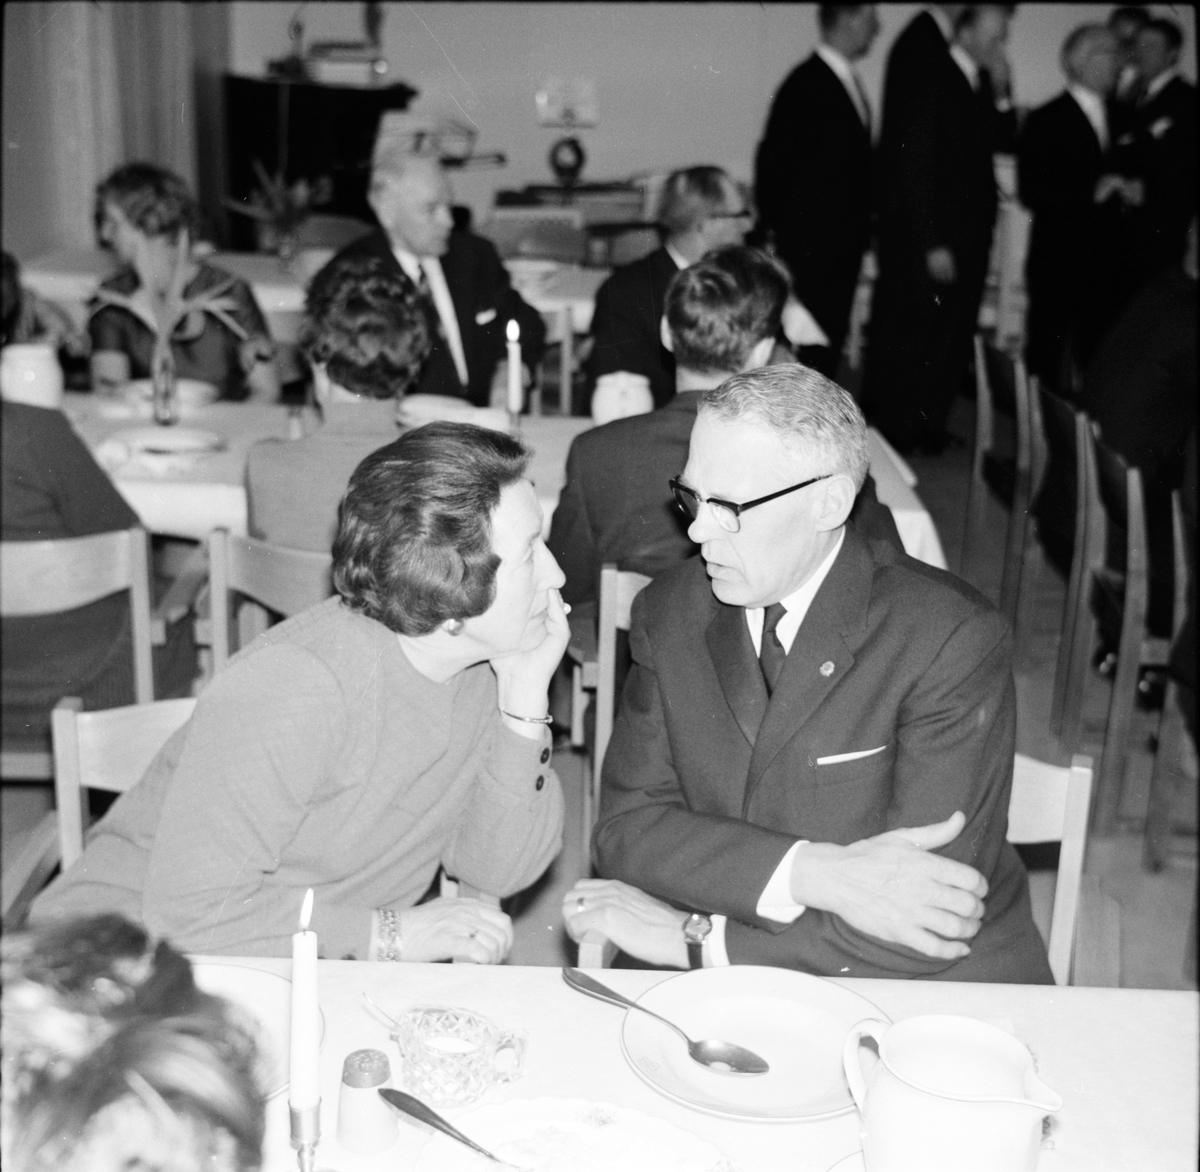 Greta Nässtrand och Evald Strömstedt samspråkar.
Arbrå, Sam Langermo avtackas.
Januari 1968